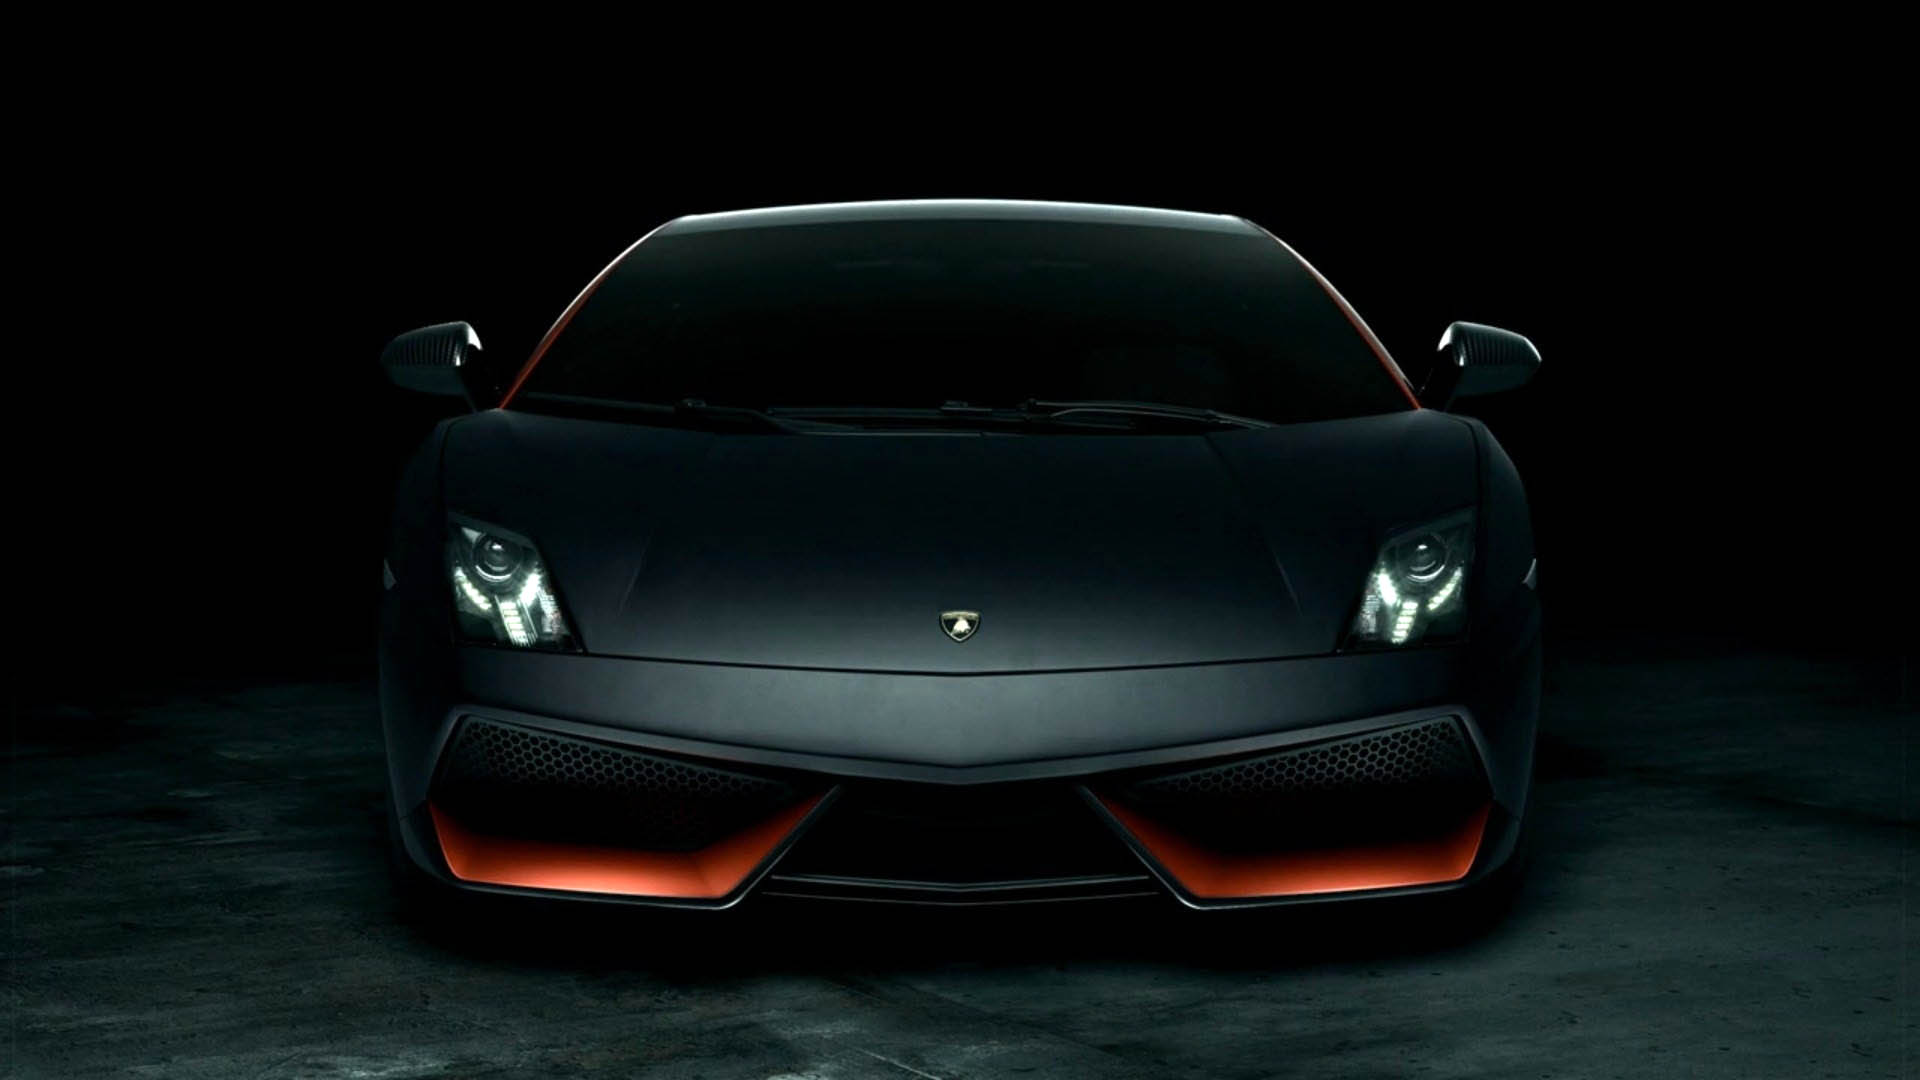 Black Lamborghini Aventador Wallpaper - WallpaperSafari